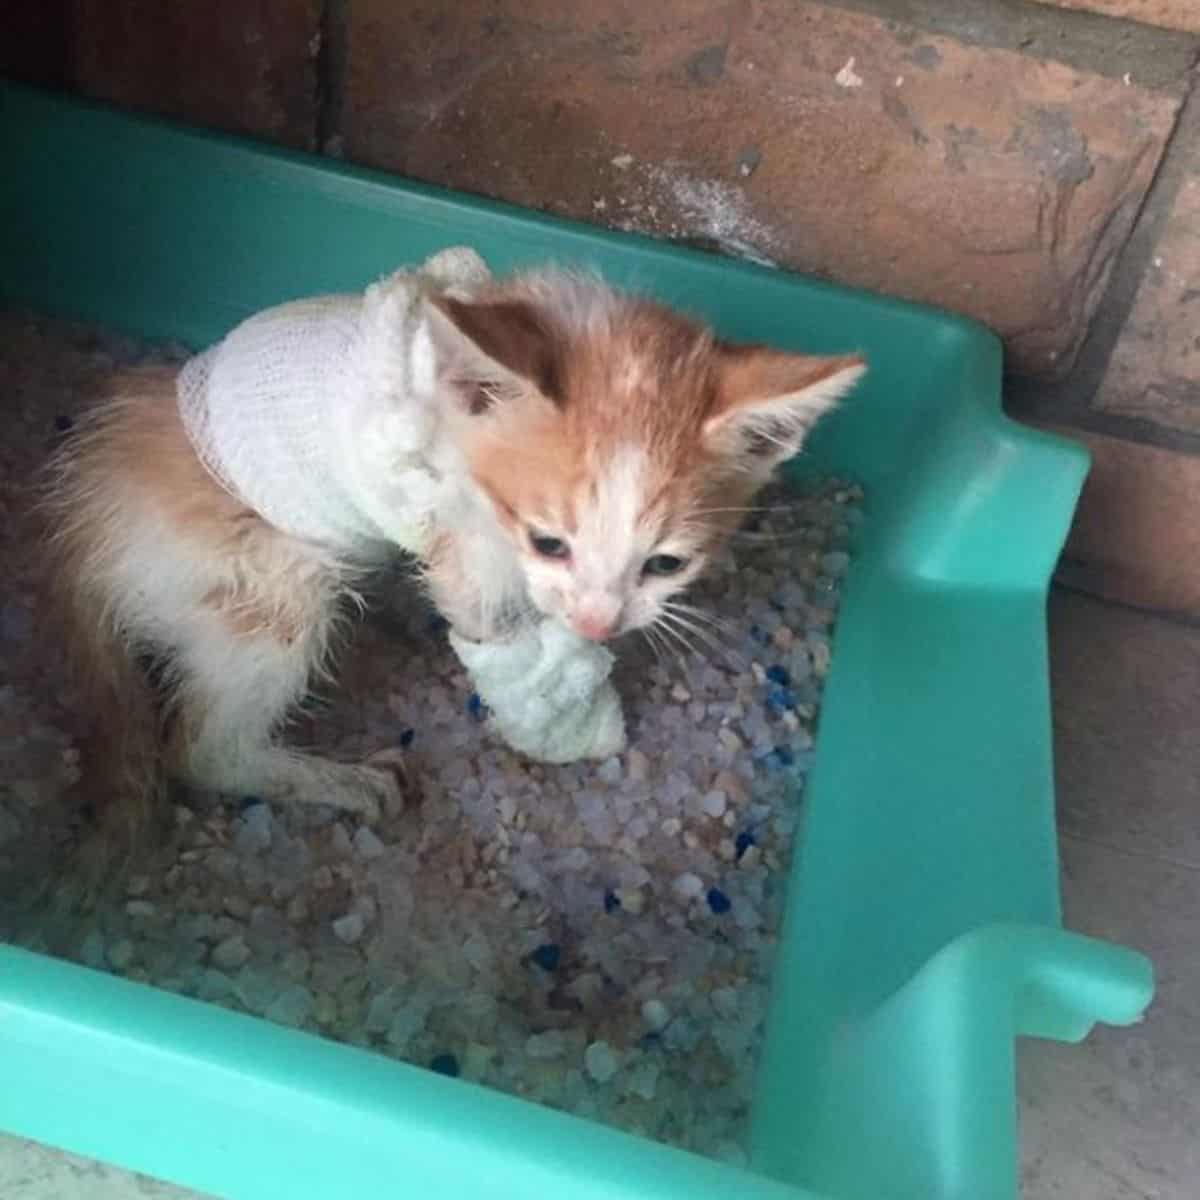 hurt kitten in a litter box